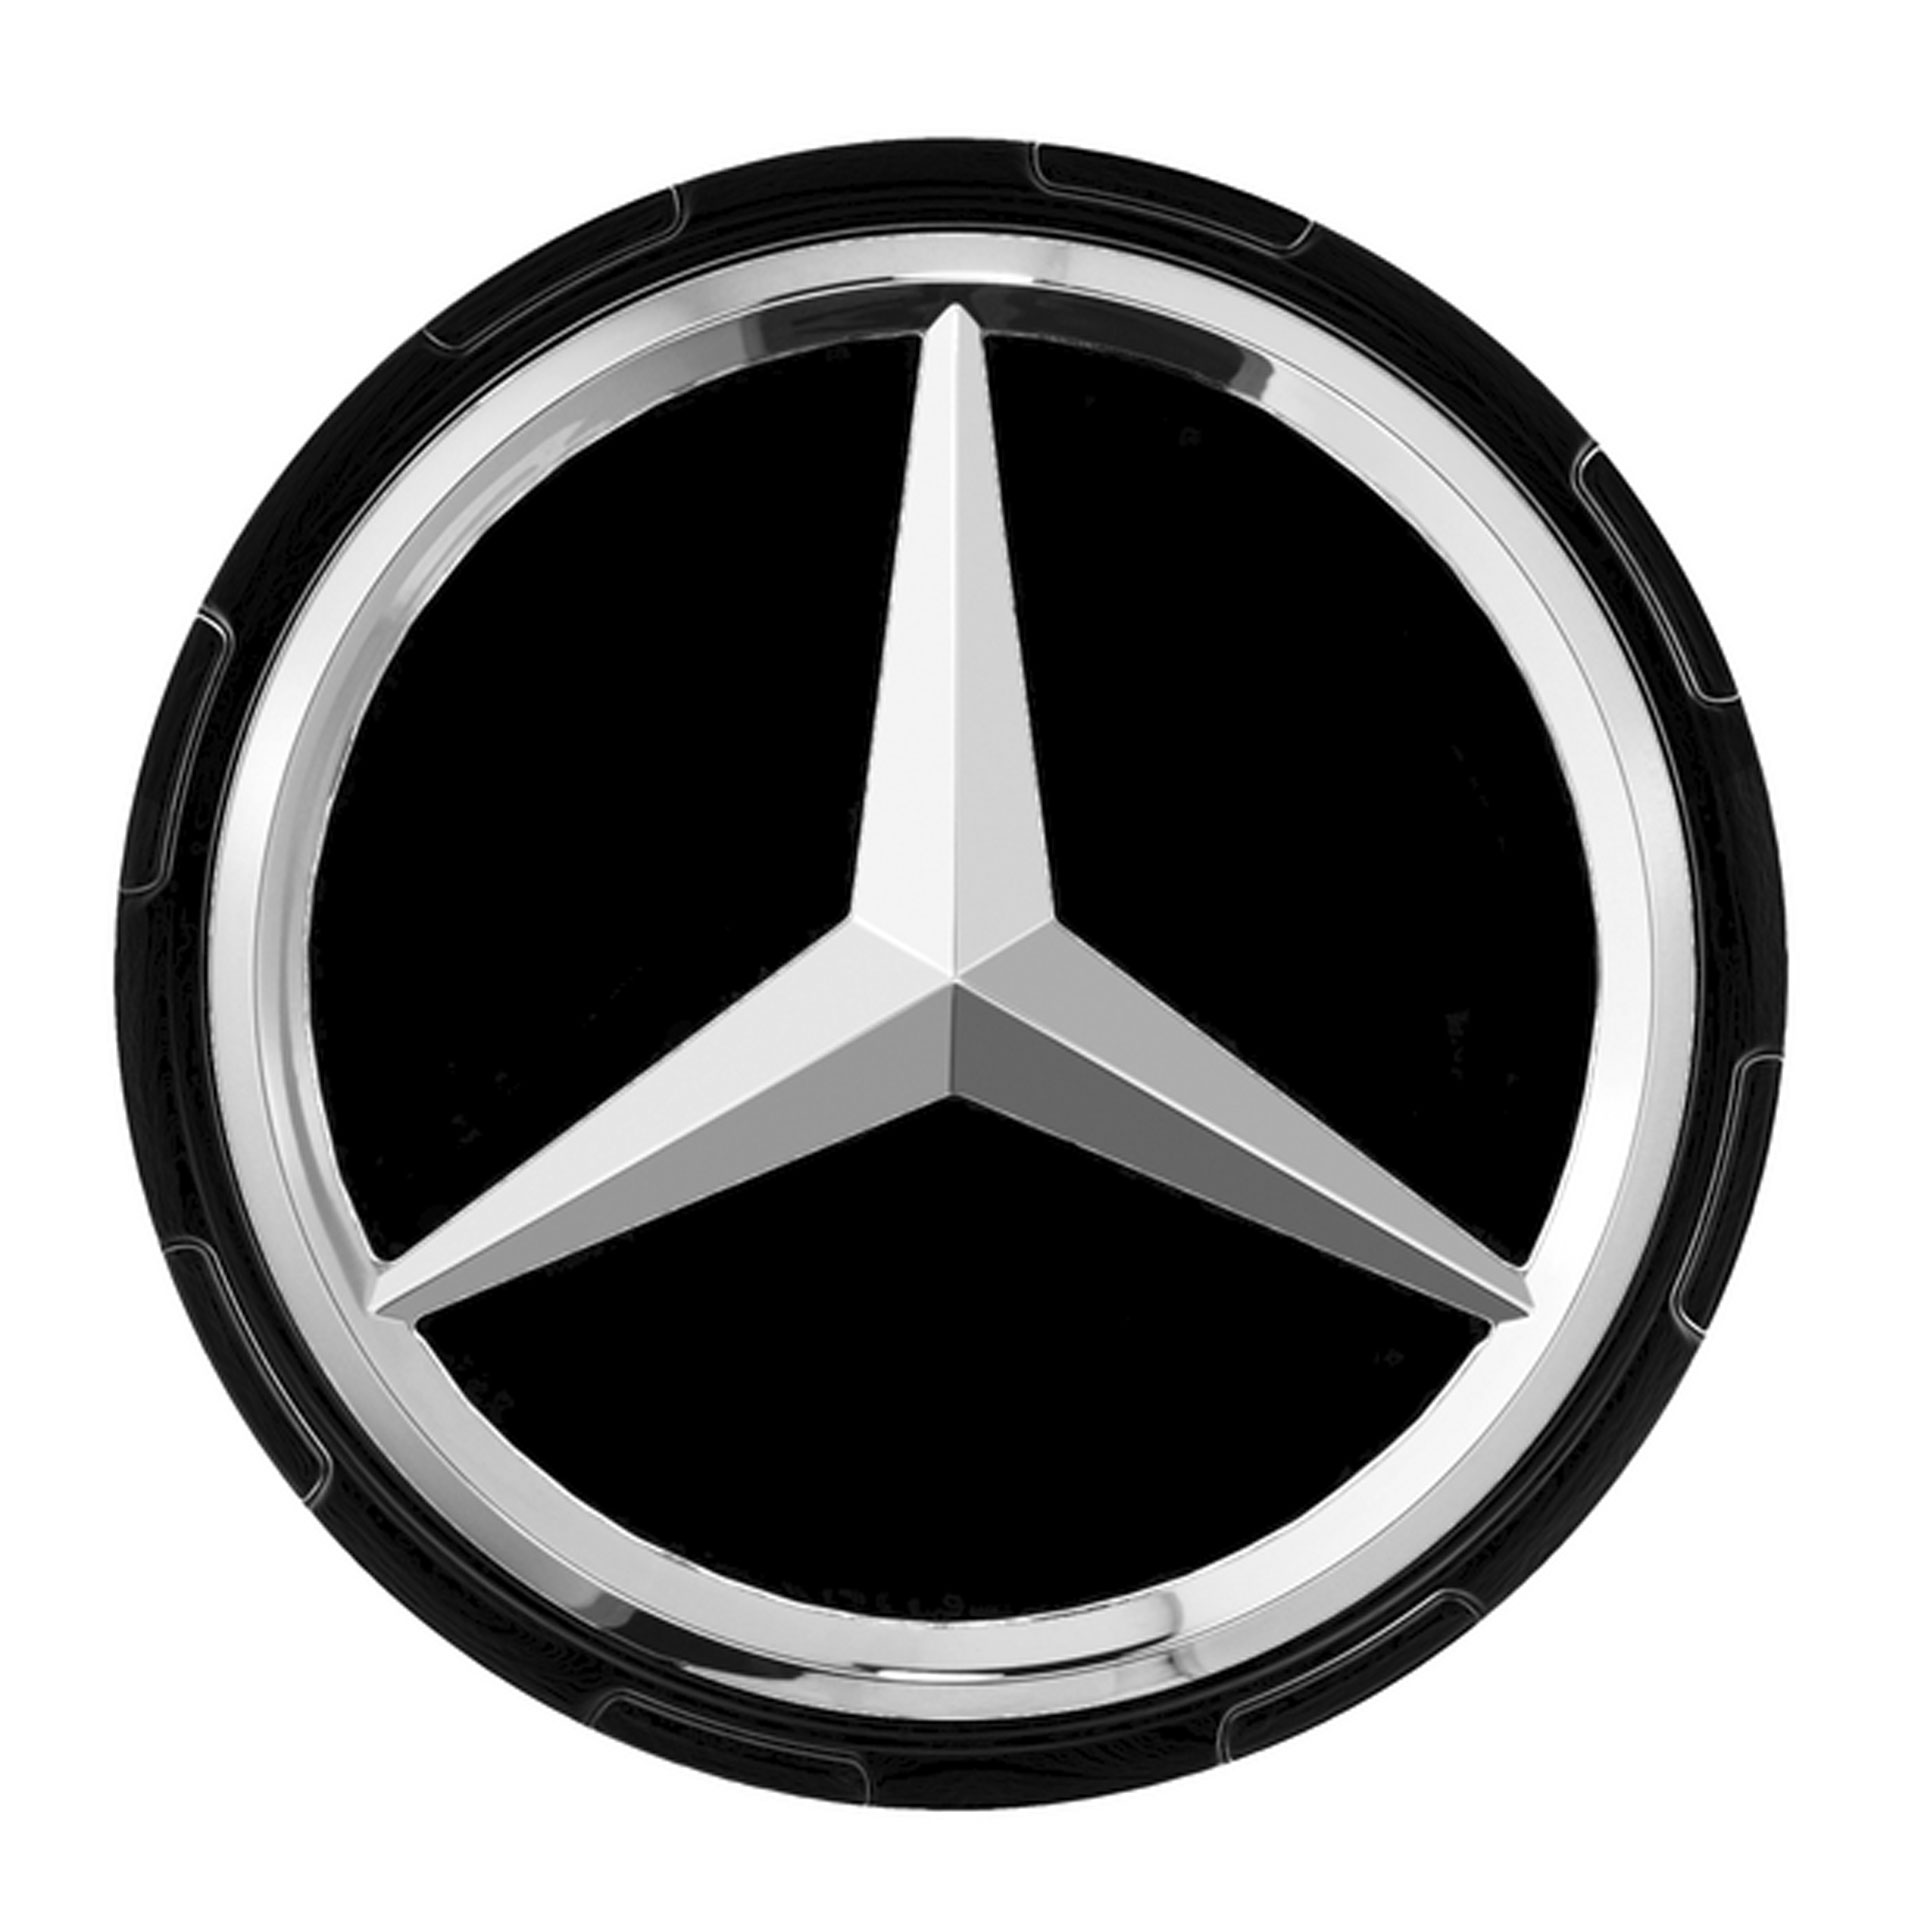 Mercedes-AMG Radnabenabdeckung Zentralverschlussdesign schwarz